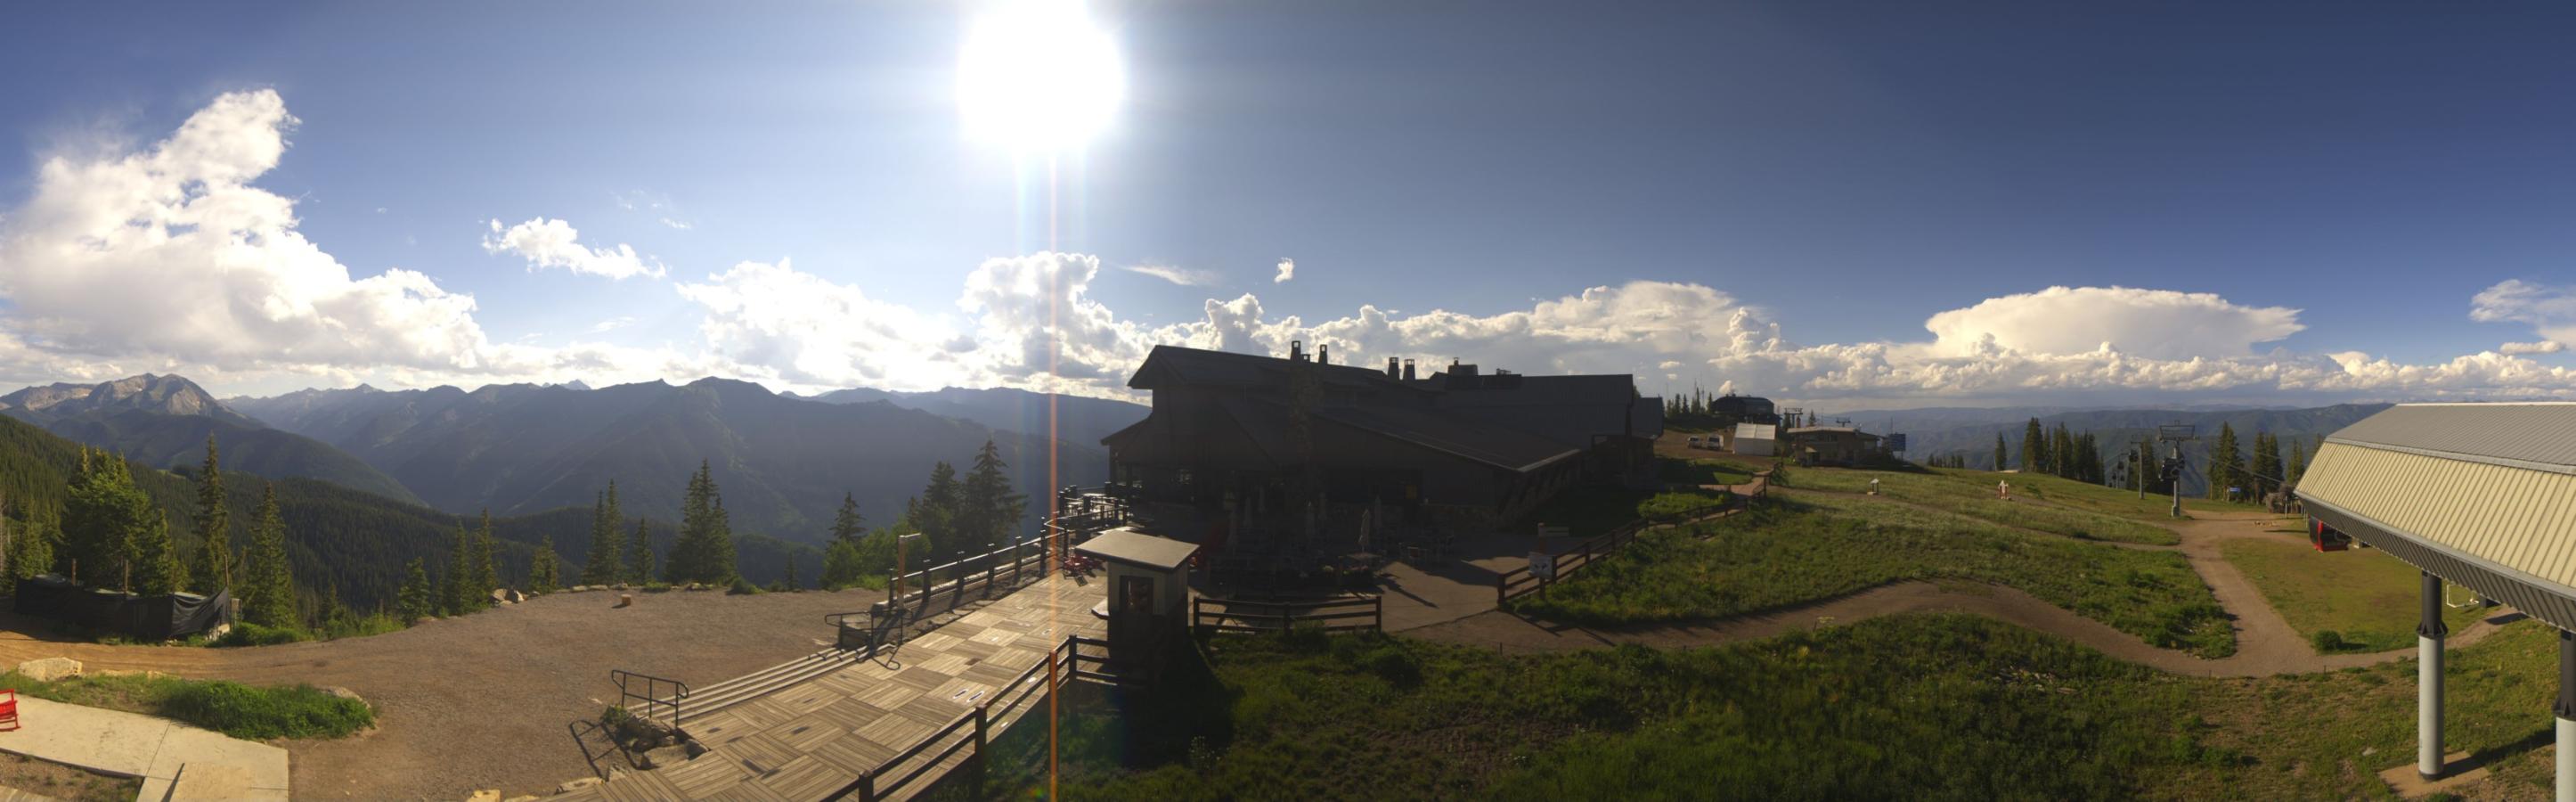 Webcam Aspen Mountain: Panoramic Aspen mountain